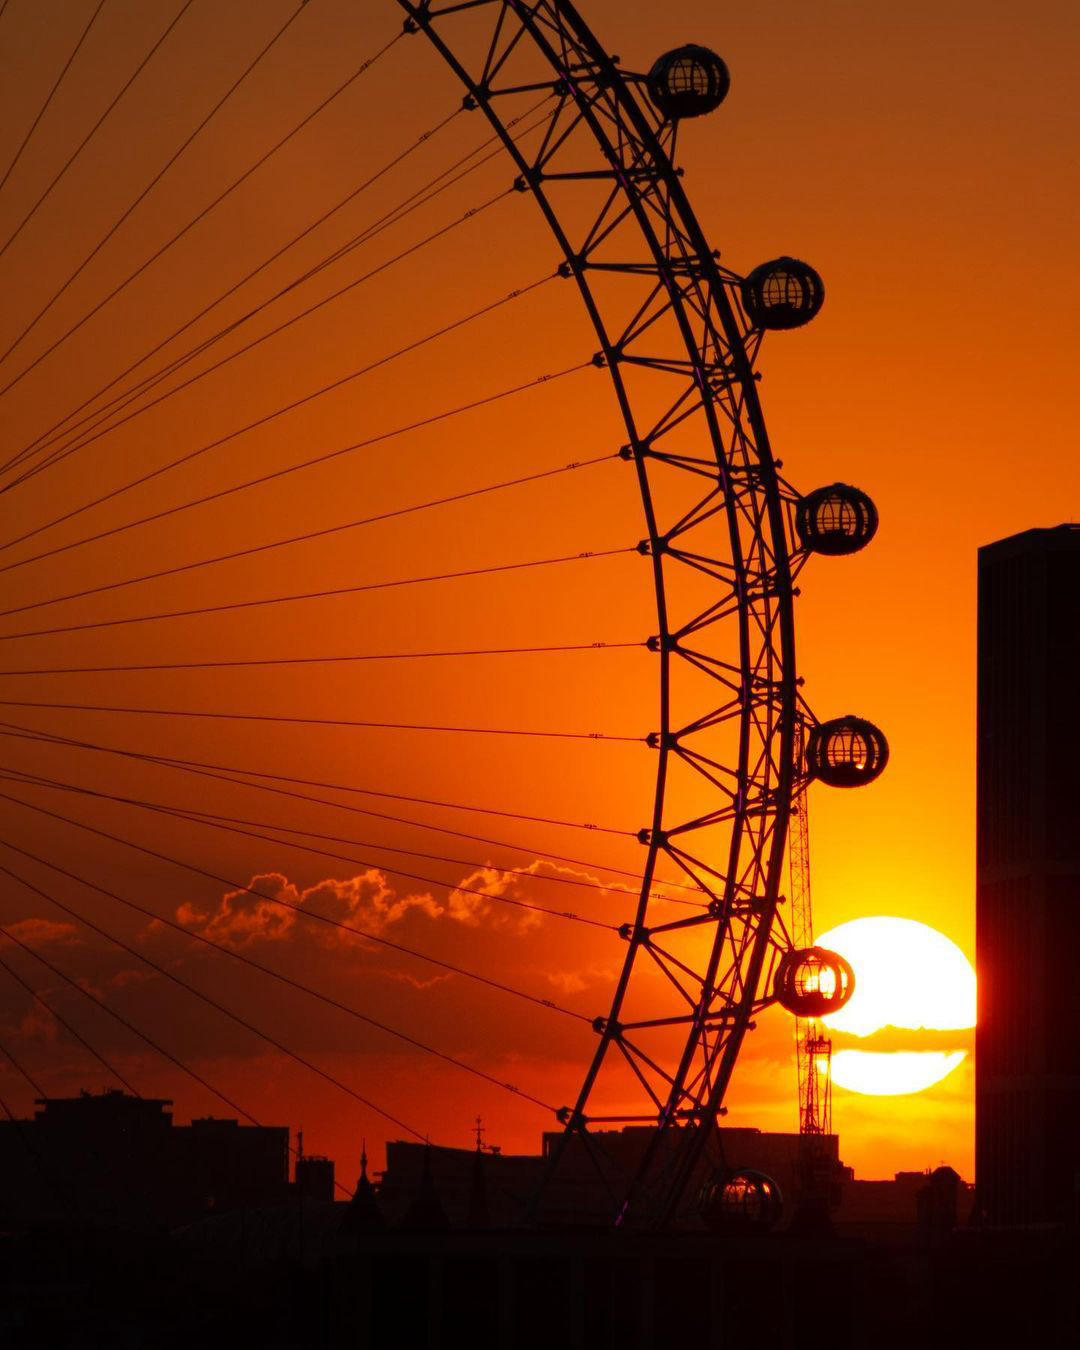 VISIT LONDON - Beautiful sunset